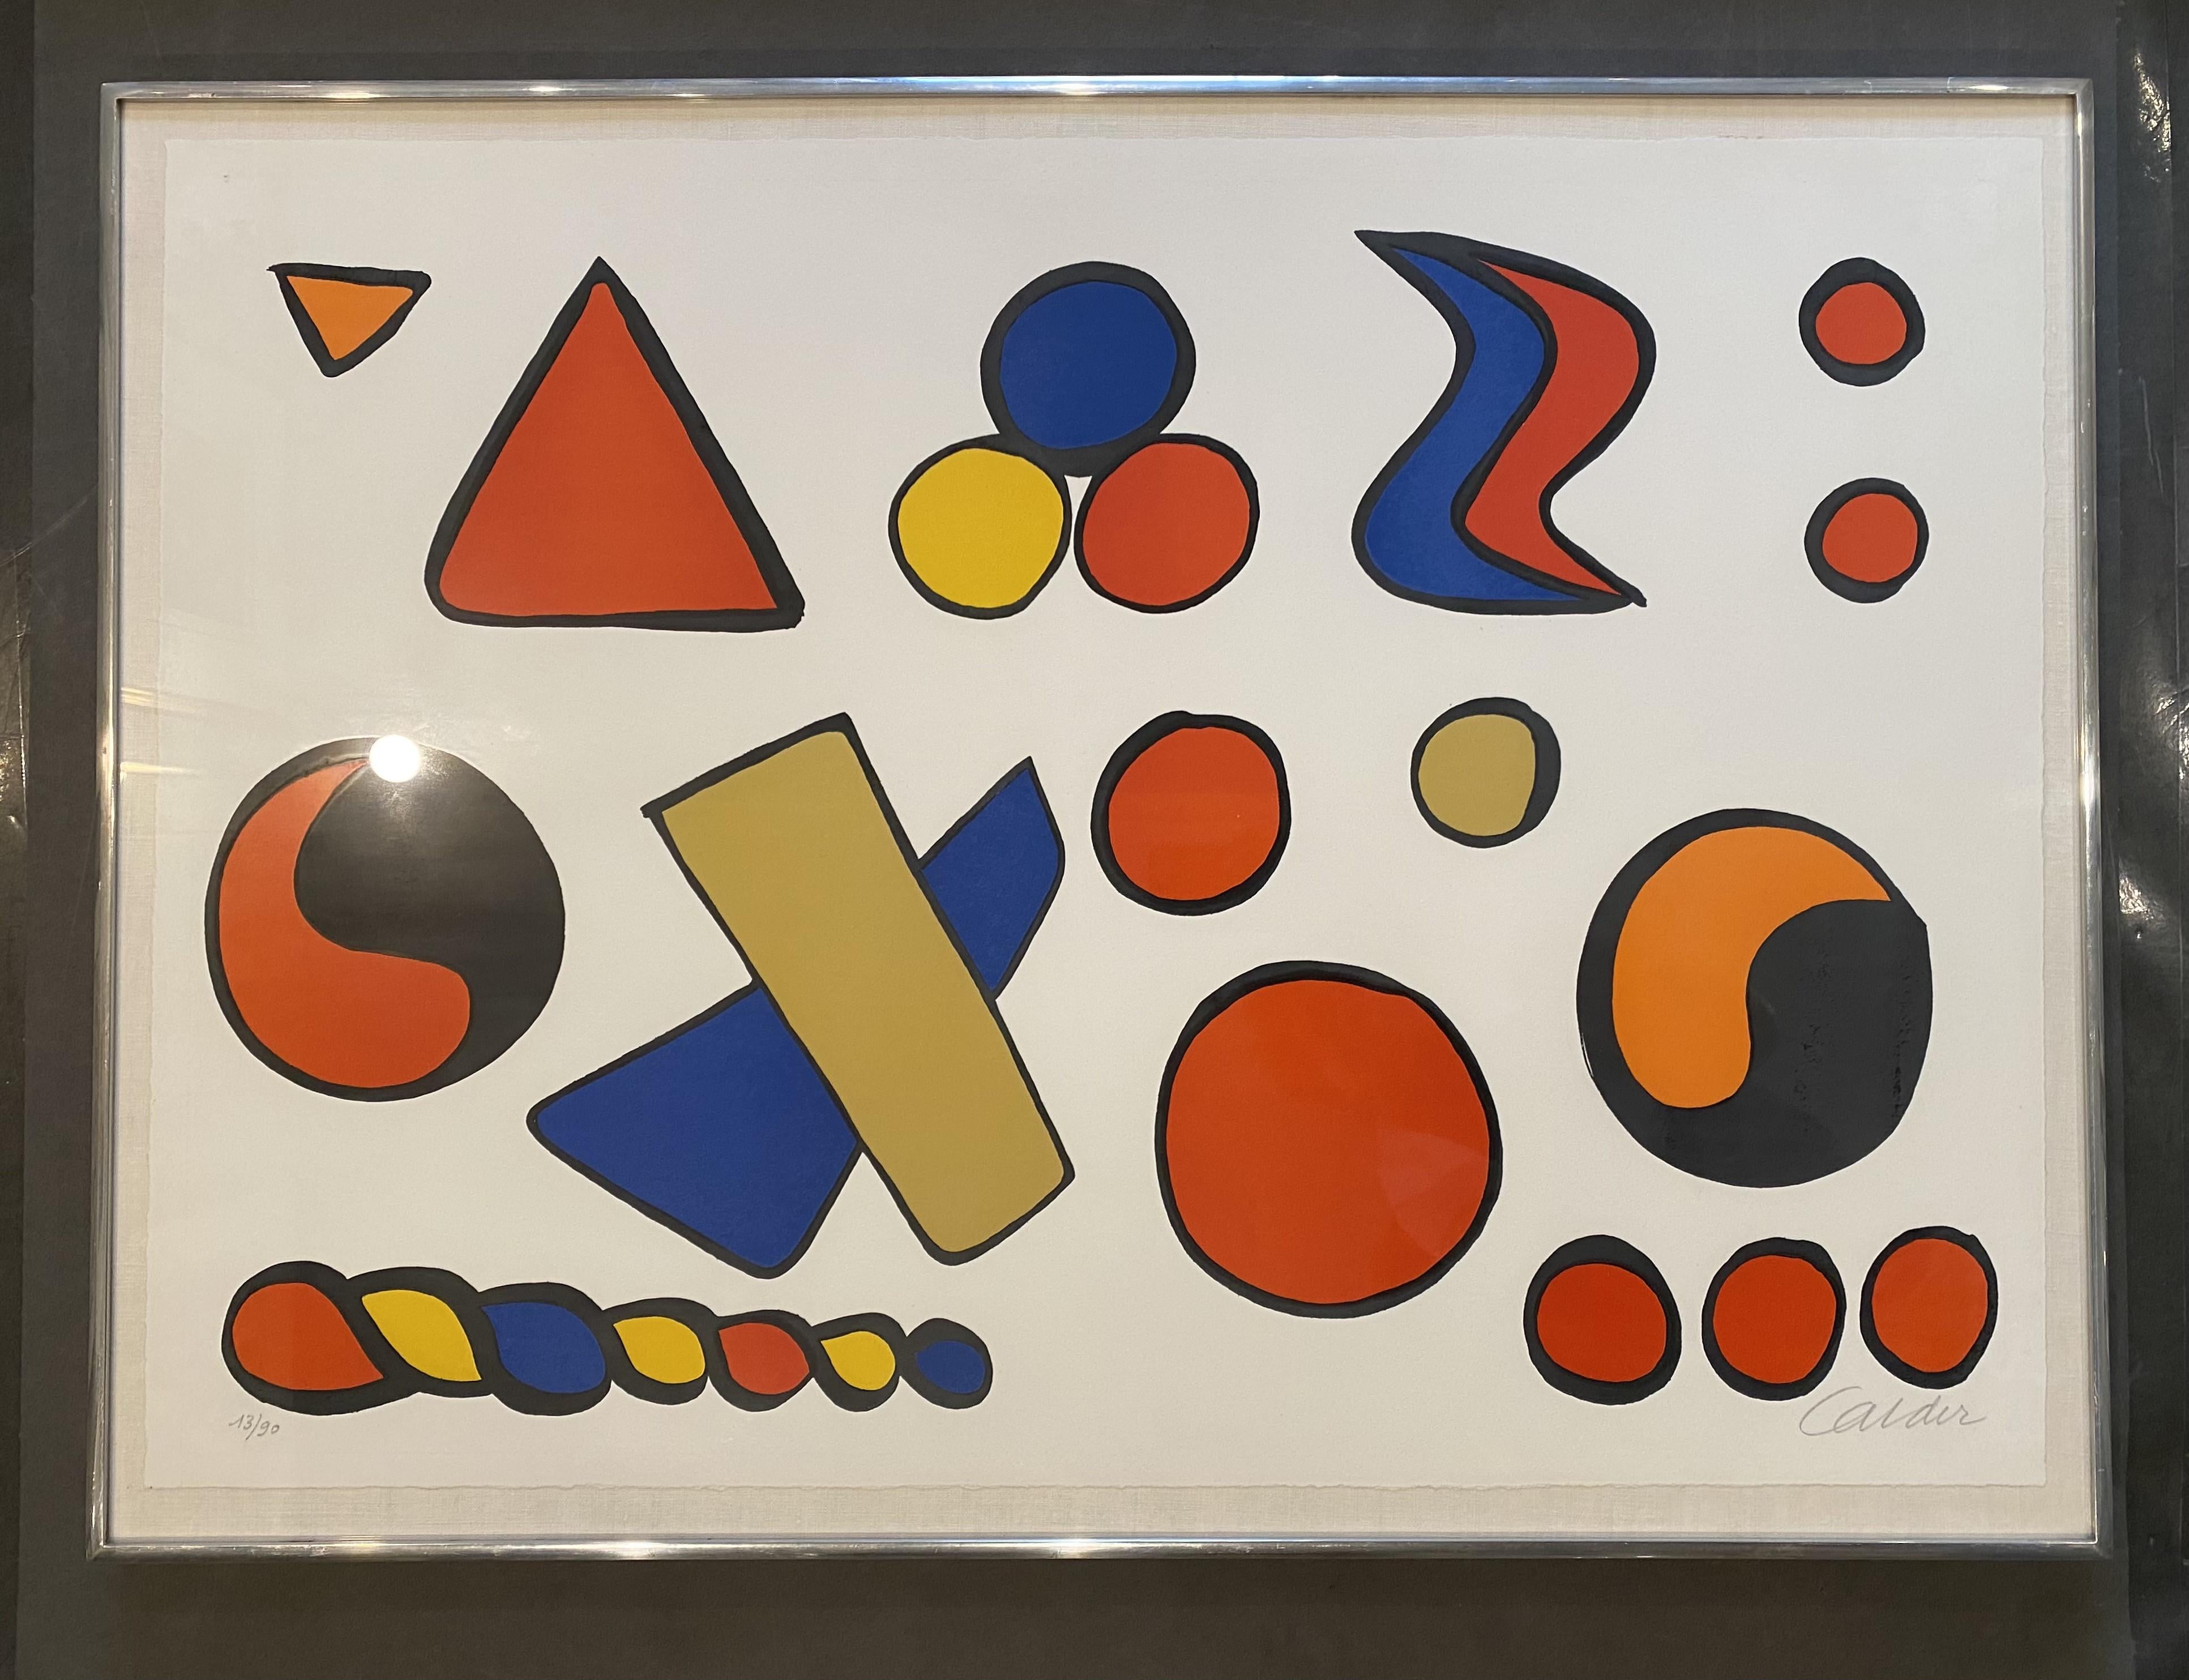 Artist: Alexander Calder
Medium: Lithograph
Title: Composition aux formes Géométriques
Year: 1965
Edition: 13/90
Framed Size: 31 1/2